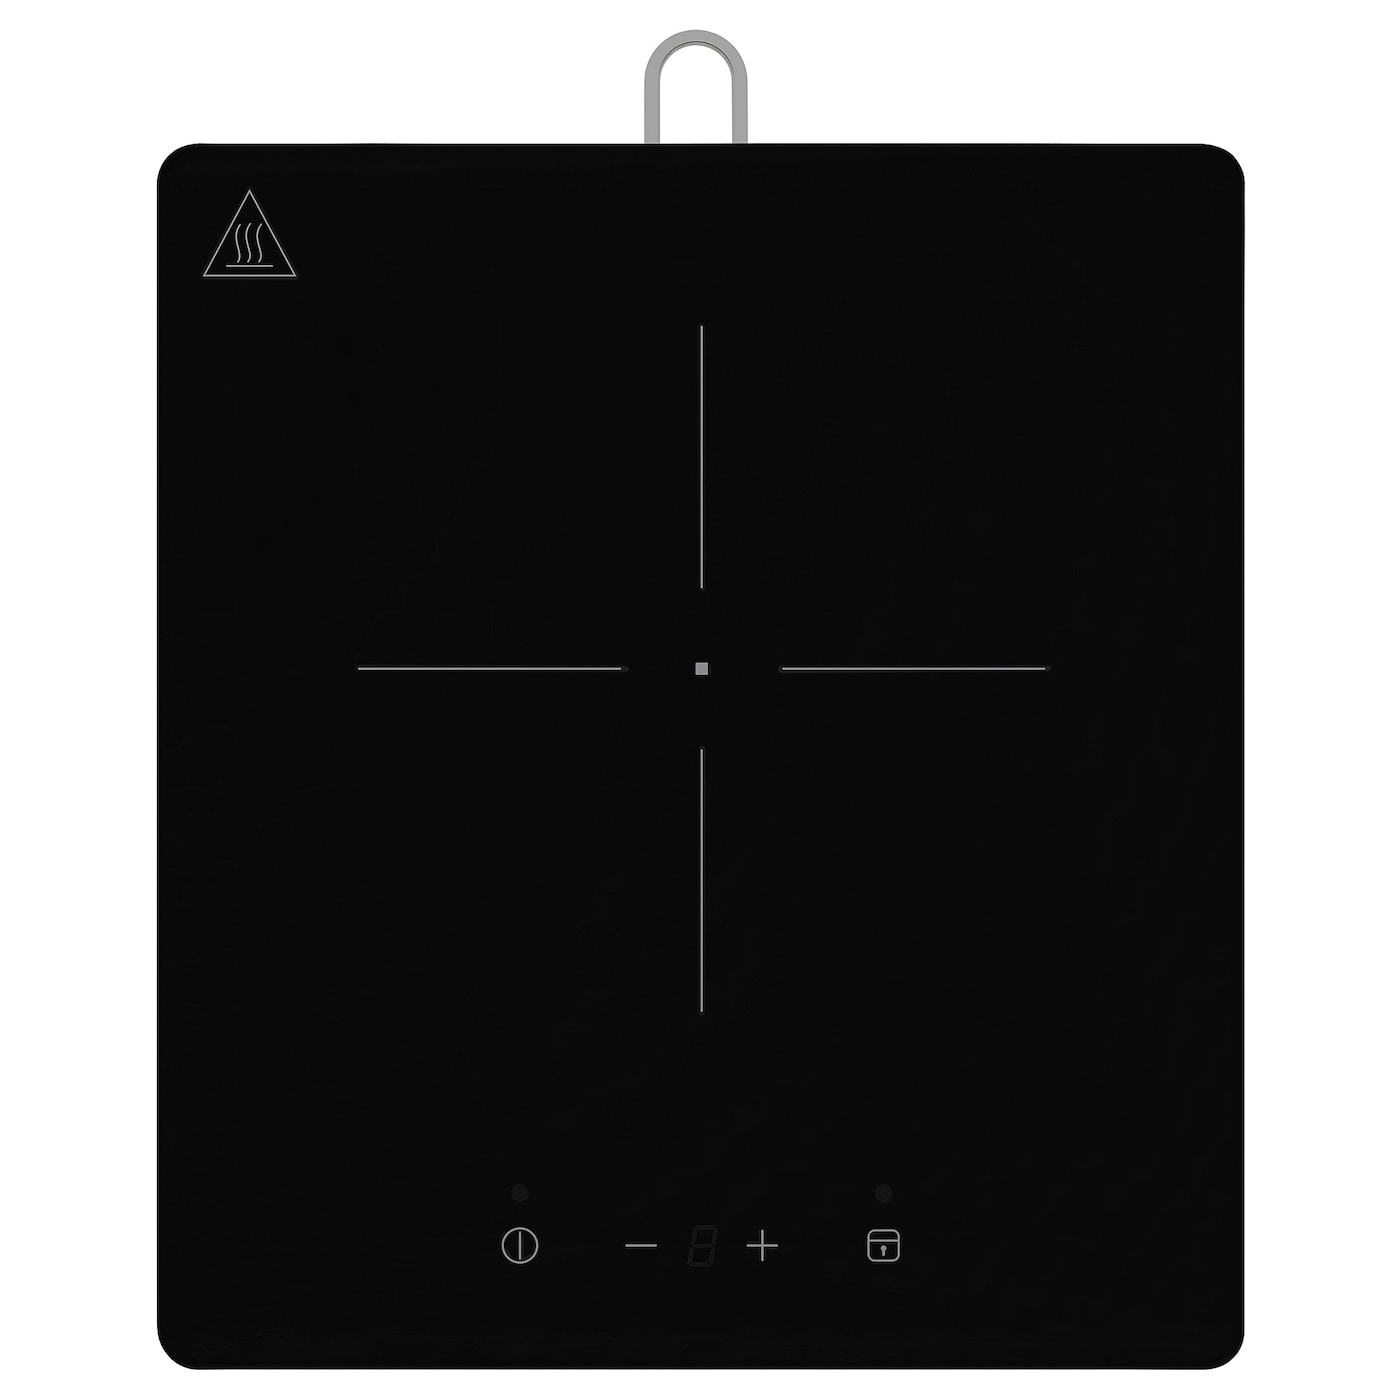 Индукционная плита - TILLREDA IKEA/ТИЛЛРЕДА  ИКЕА, 27 см, черный